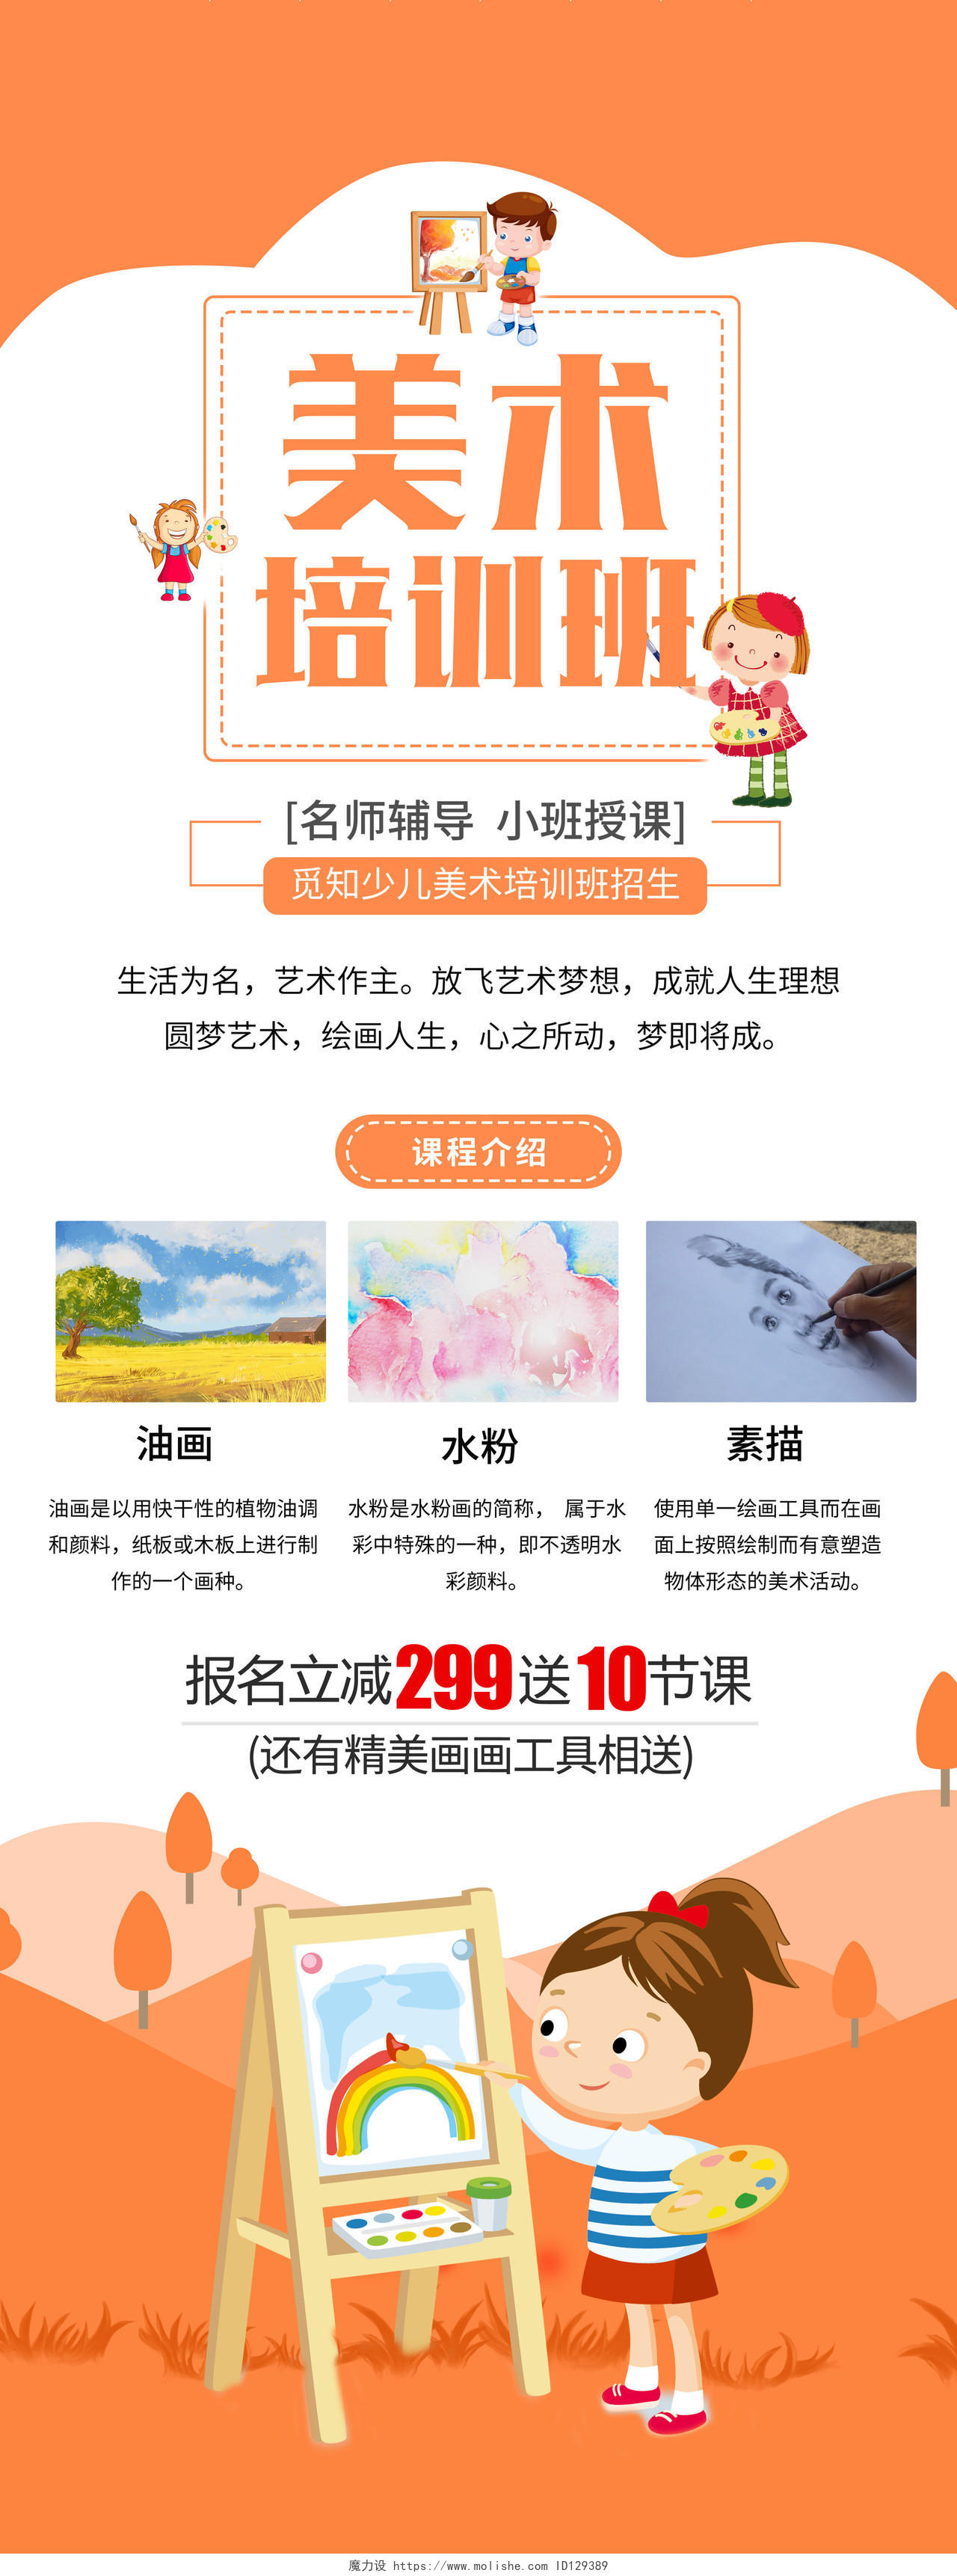 橙黄色美术培训班宣传招生手机海报美术招生